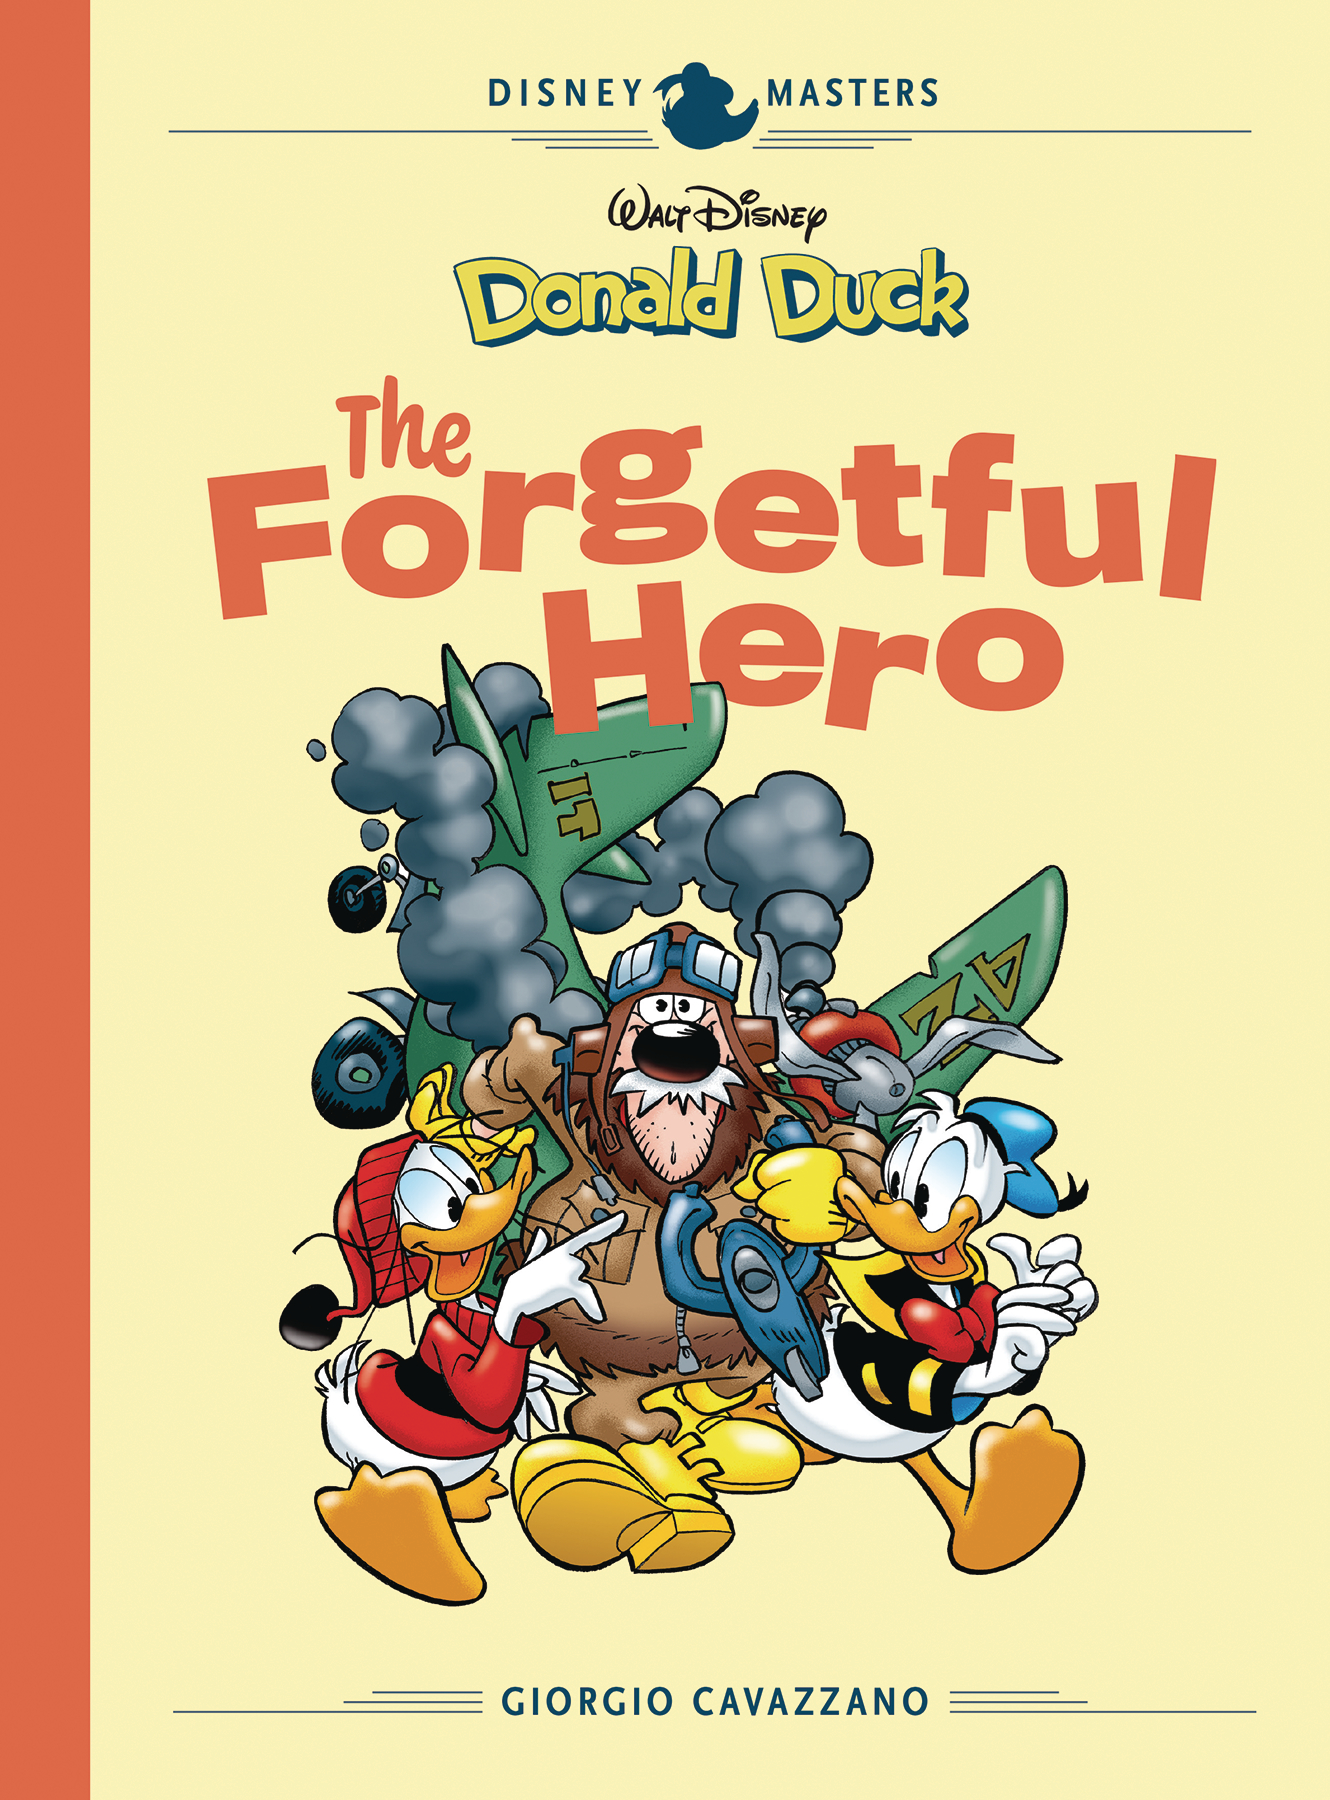 Disney Masters Hardcover Volume 12 Cavazzano Donald Duck Forgetful